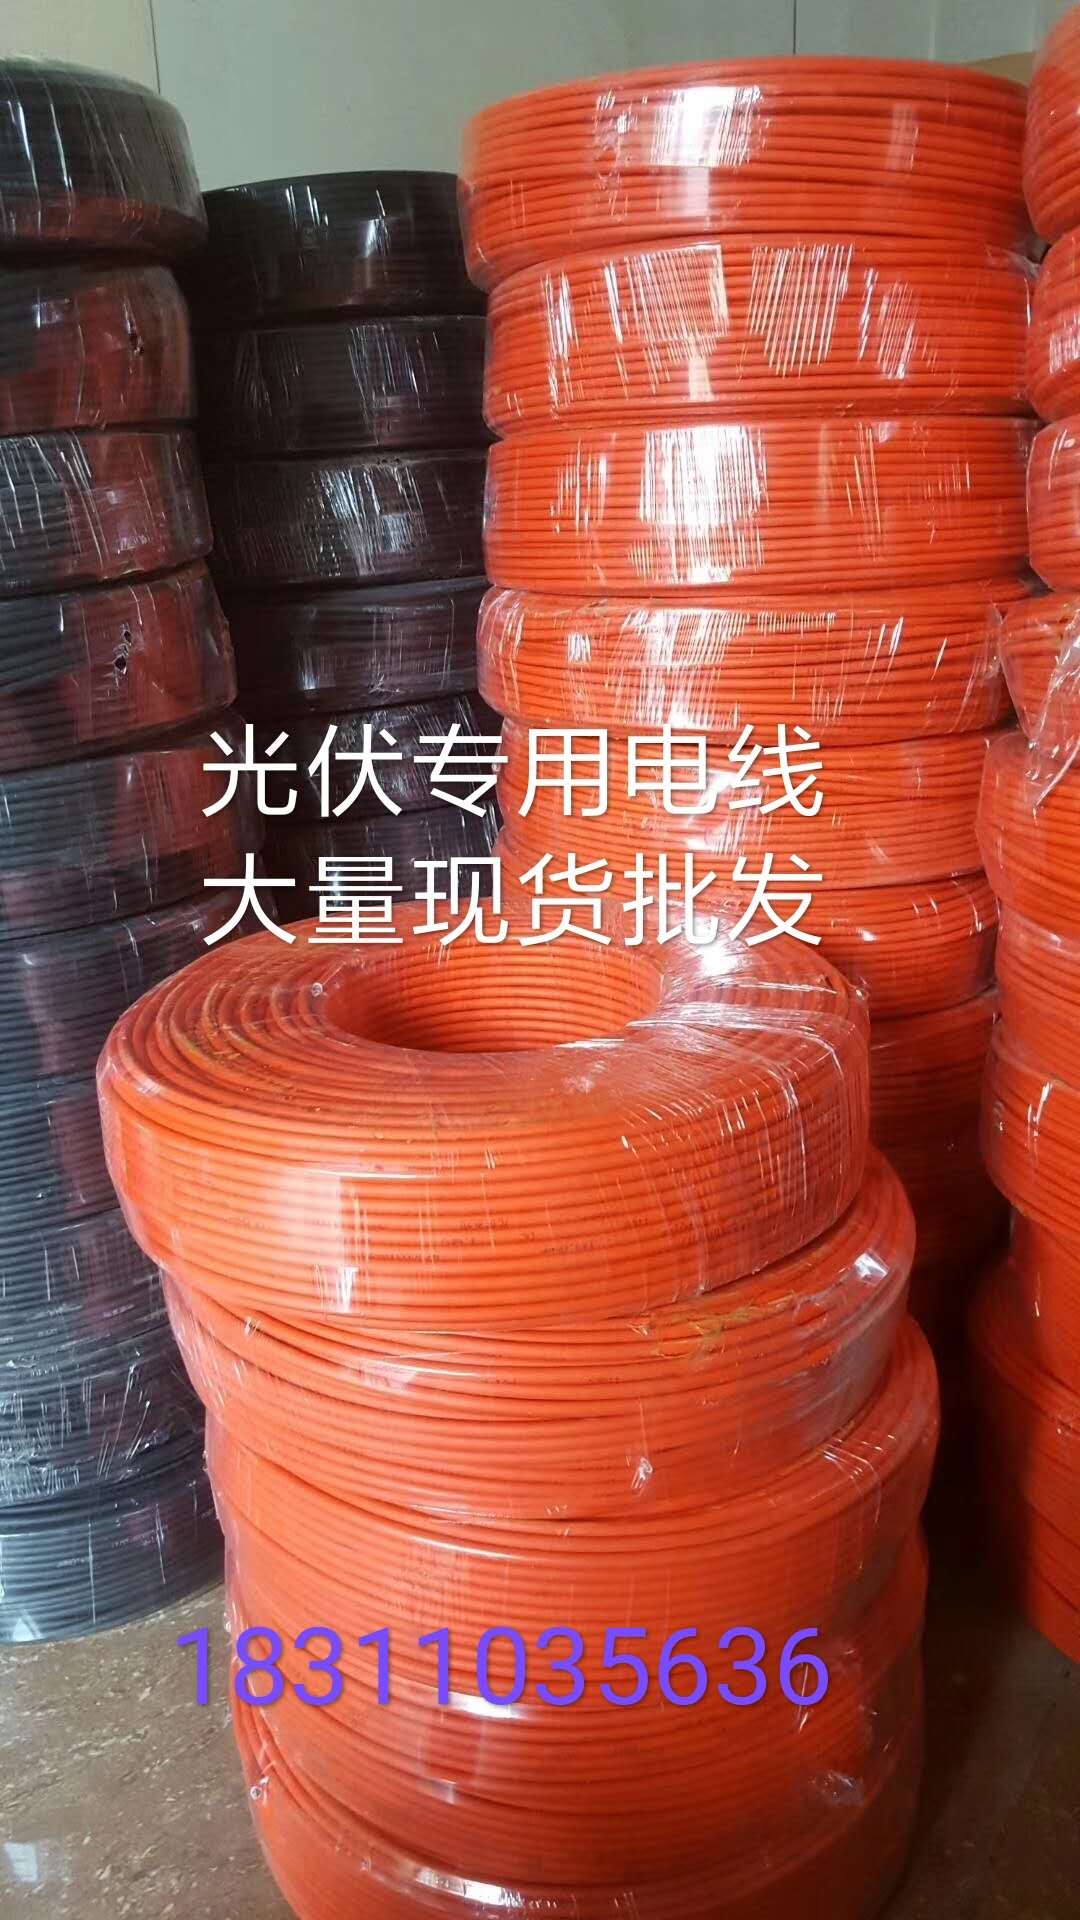 北京光伏电缆厂家 国标光伏电缆线 PV-F1*4 1*6 光伏电源线生产厂家图片